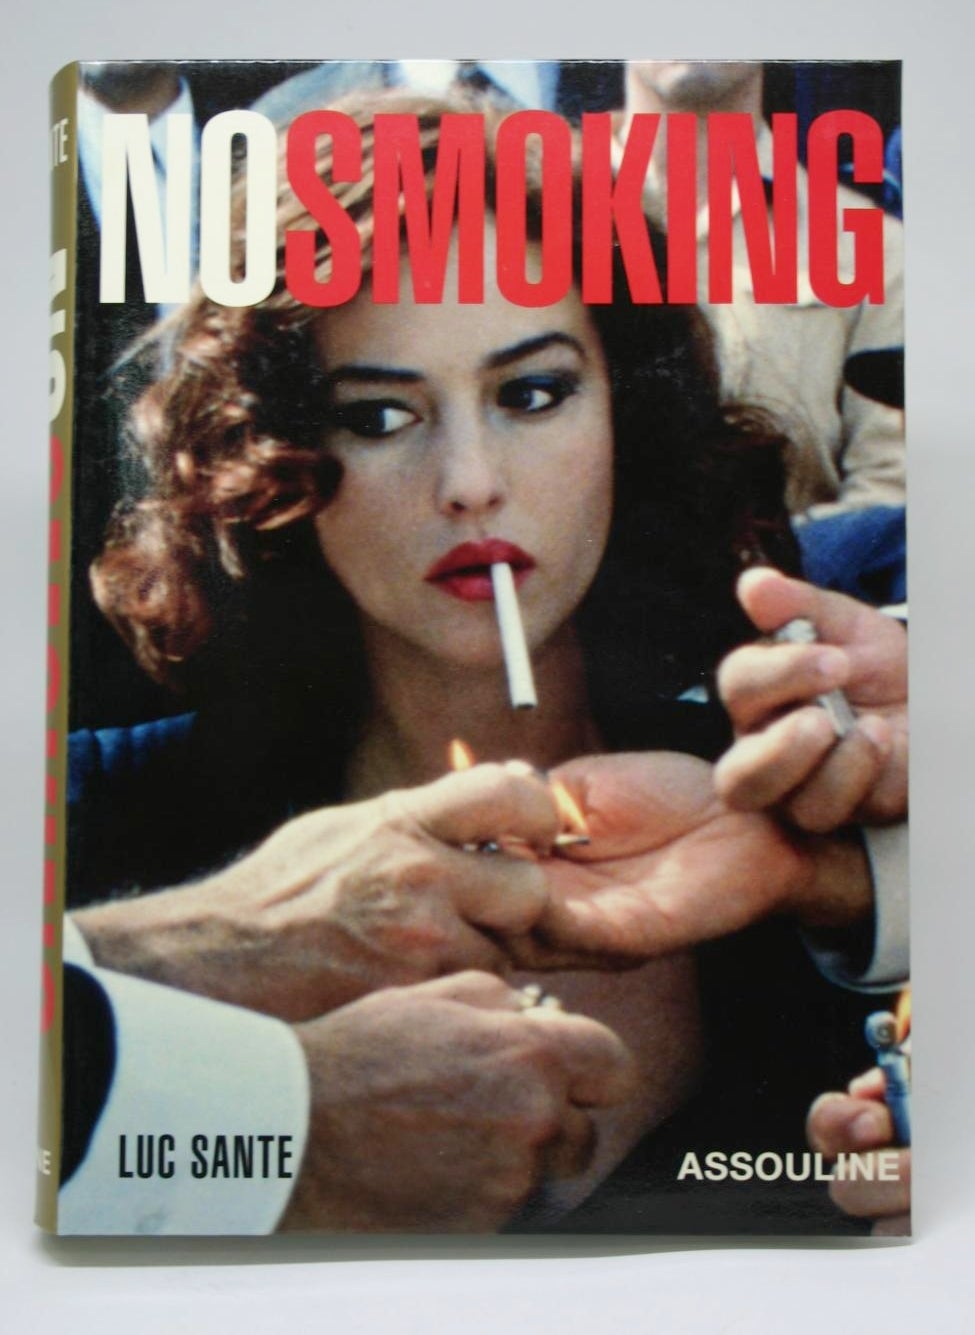 No Smoking by Luc Sante on Minotavros Books